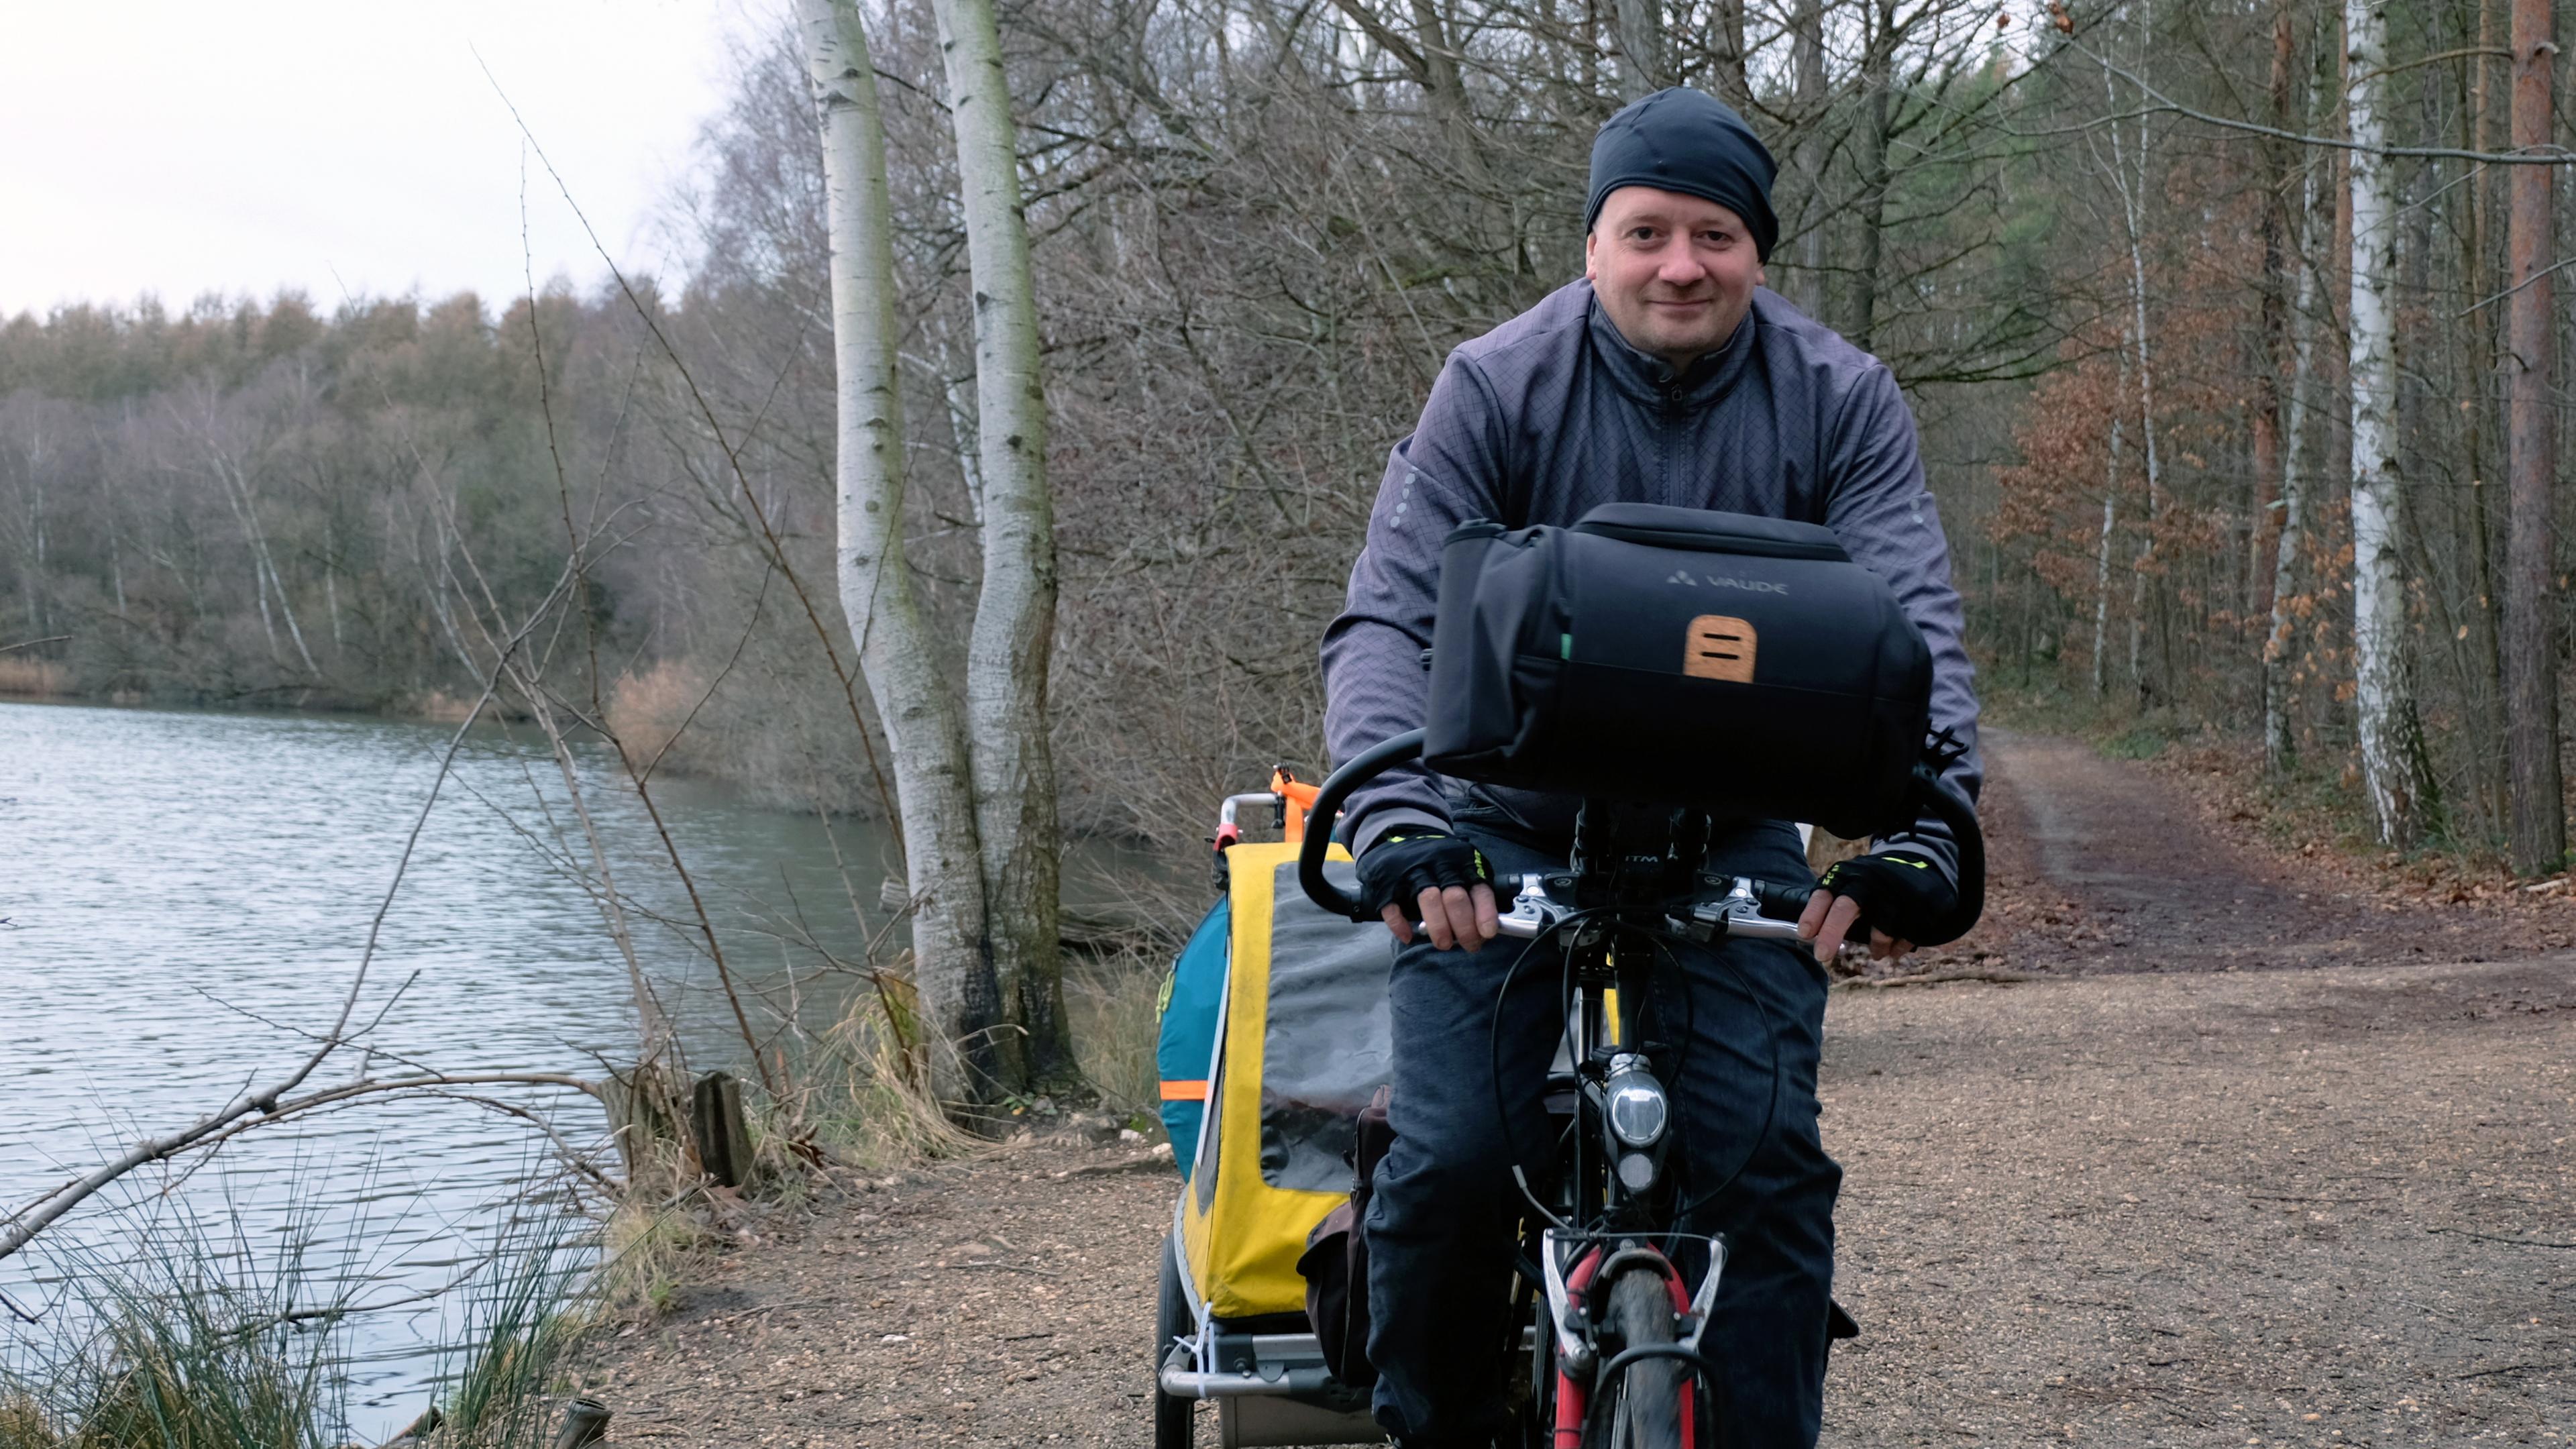 Björn ist mittig im Bild auf seinem Fahrrad zu sehen. Er trägt eine schwarze Mütze und eine graue Jacke. Rechts von ihm sieht man das Ufer eines Sees. Links von ihm führt ein Weg in einen Wald.